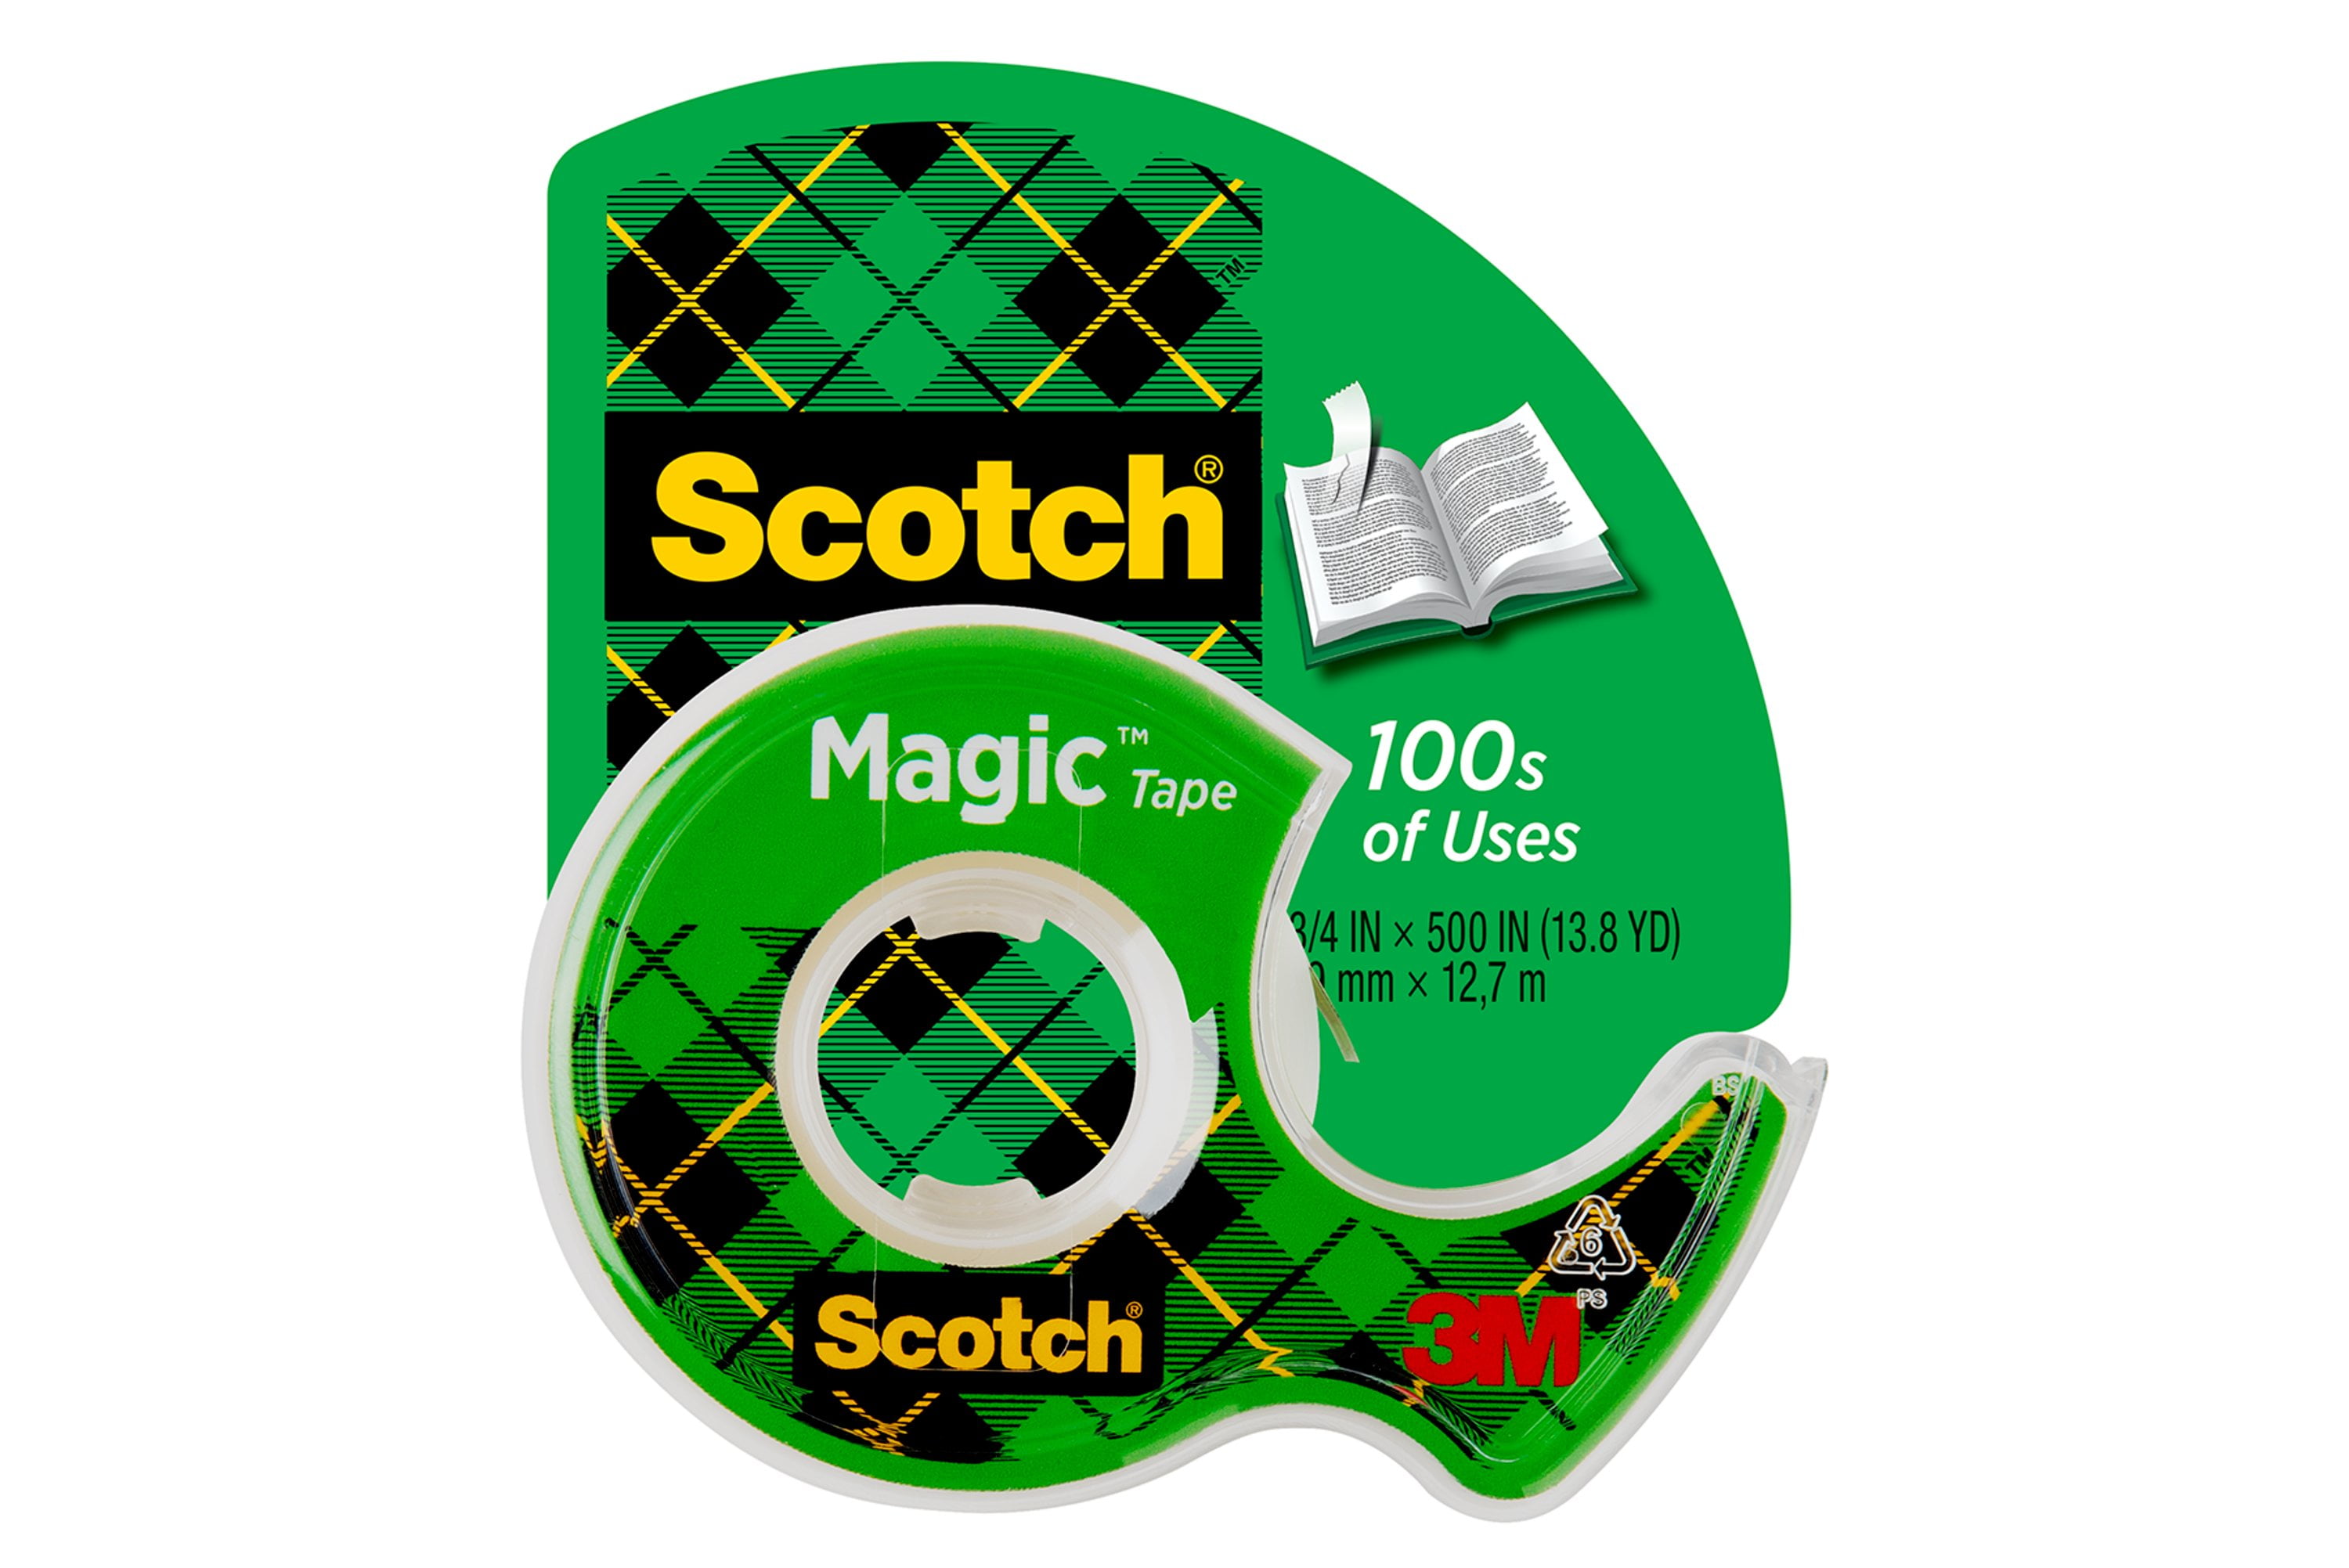 Scotch Magic Tape 1930 poster.